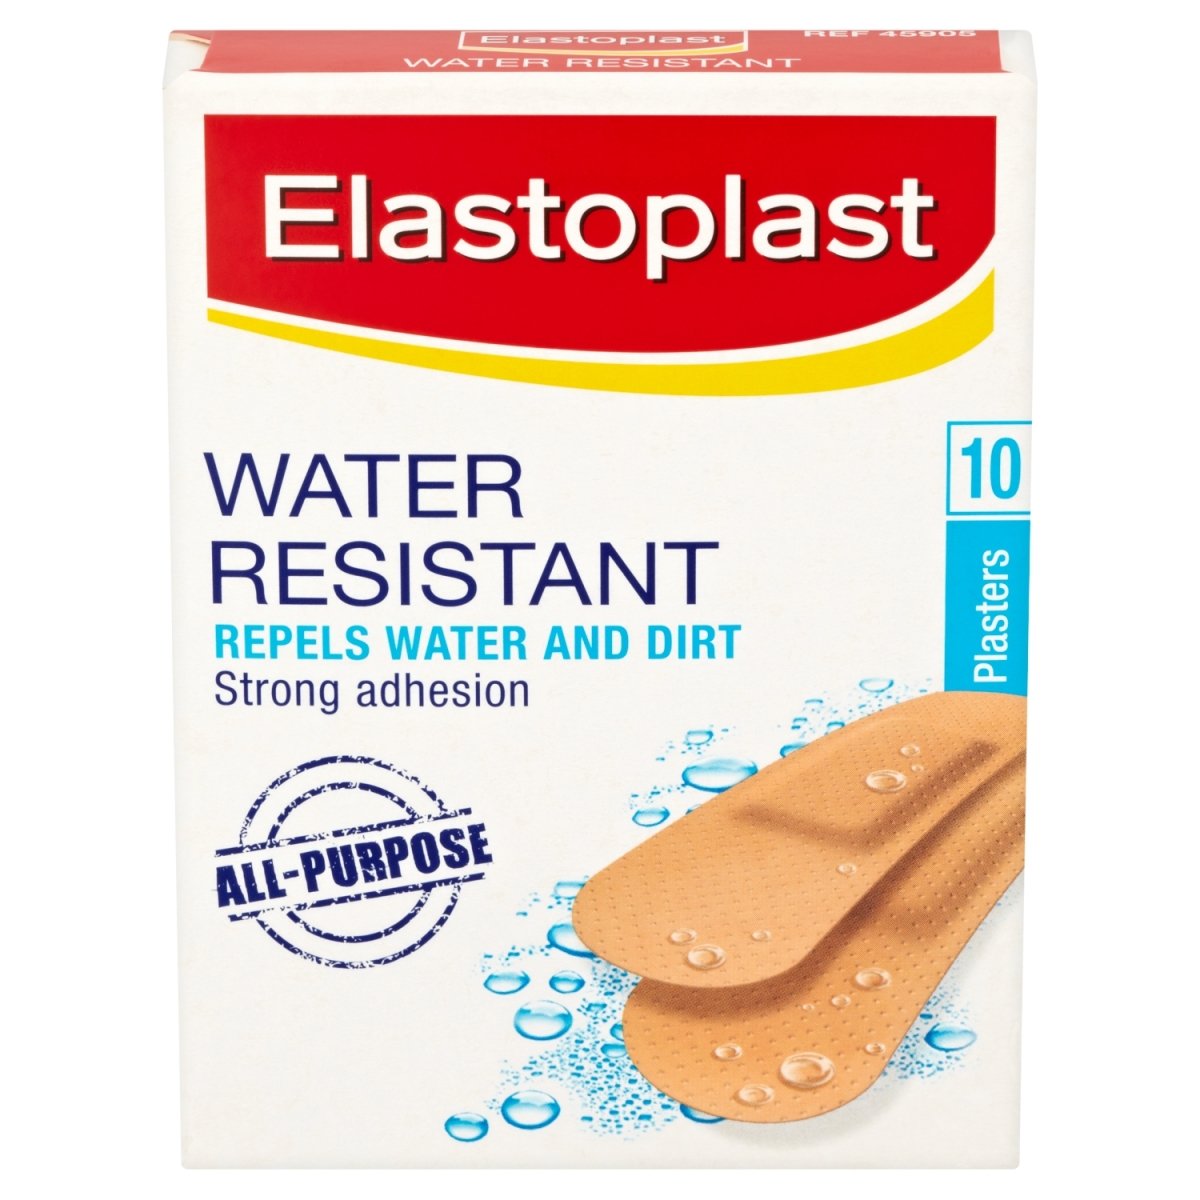 Elastoplast Handy Waterproof Plasters - Intamarque 4005800042775